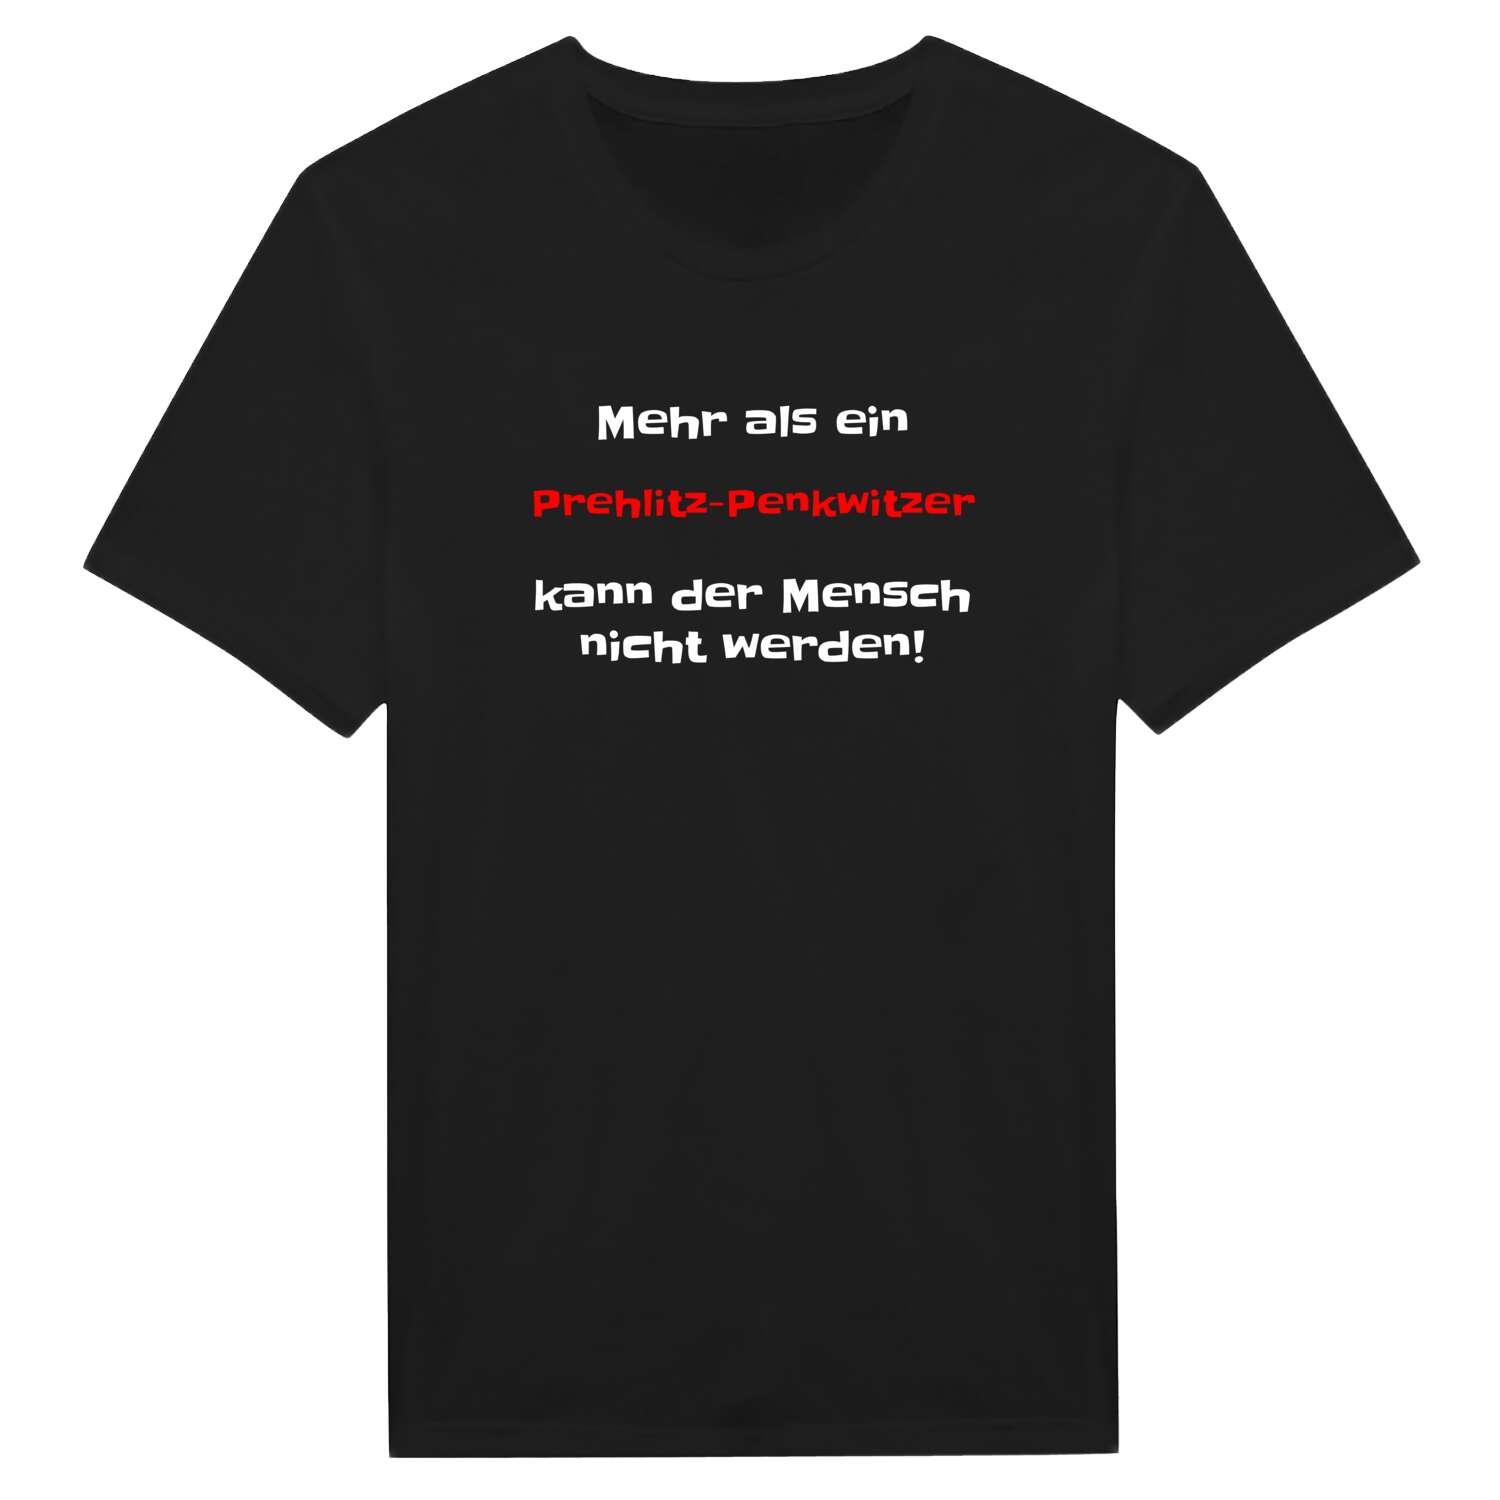 Prehlitz-Penkwitz T-Shirt »Mehr als ein«